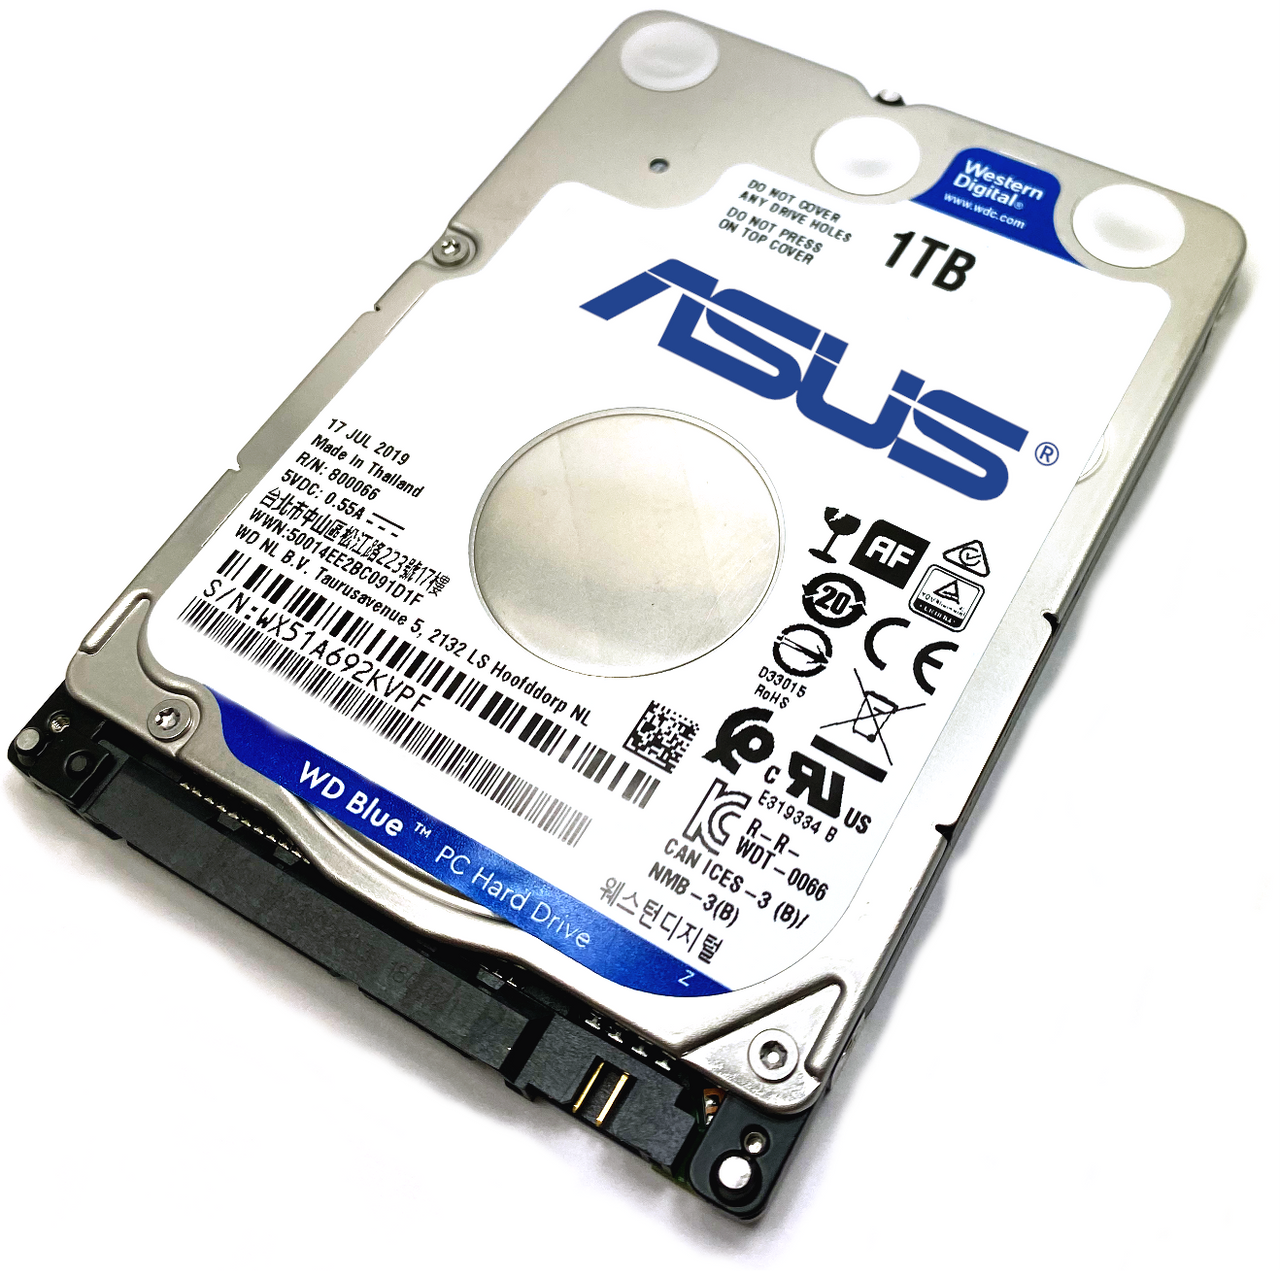 Exert månedlige mm Asus Zenbook UX31E-RSL8 (Silver) Laptop Hard Drive Replacement -  LaptopHDS.com